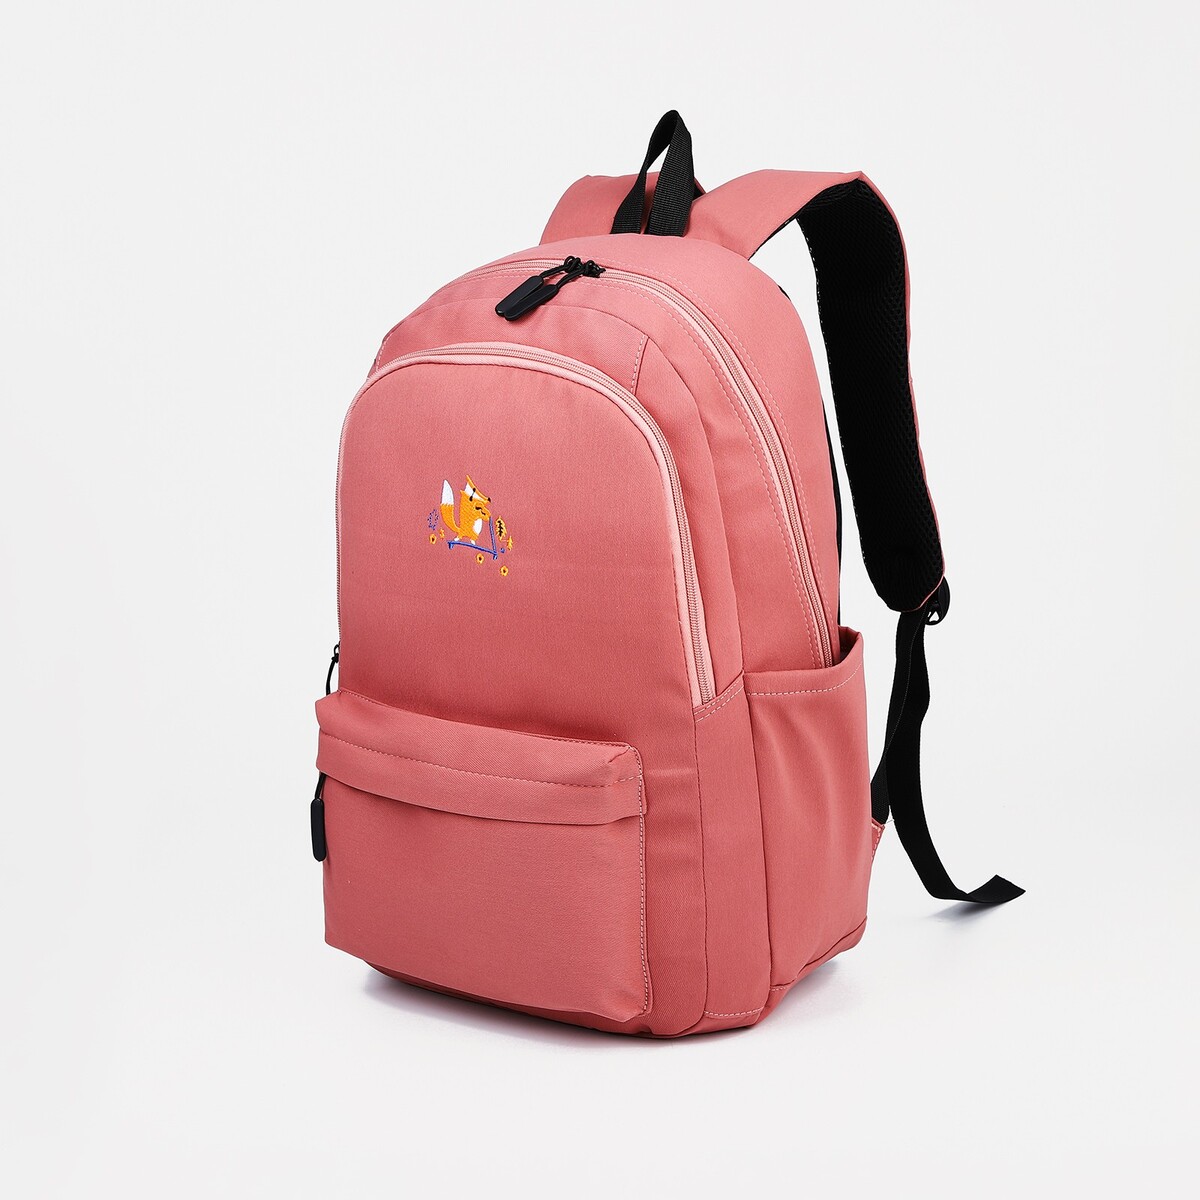 Рюкзак молодежный из текстиля, 2 отдела на молниях, 3 кармана, цвет розовый рюкзак молодежный из текстиля 3 кармана белый розовый